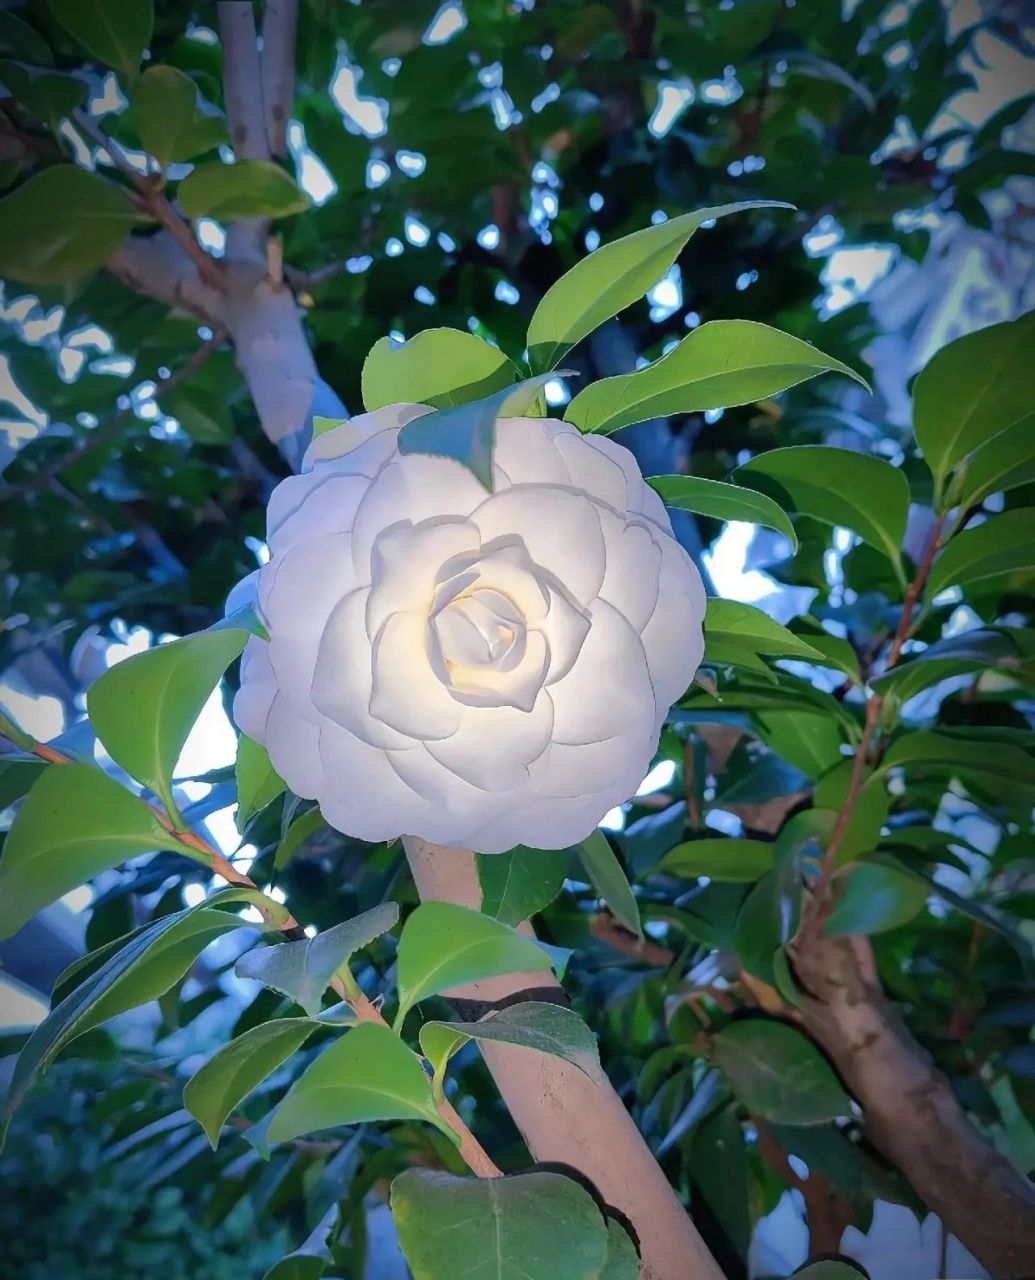 白色椿花的花语图片